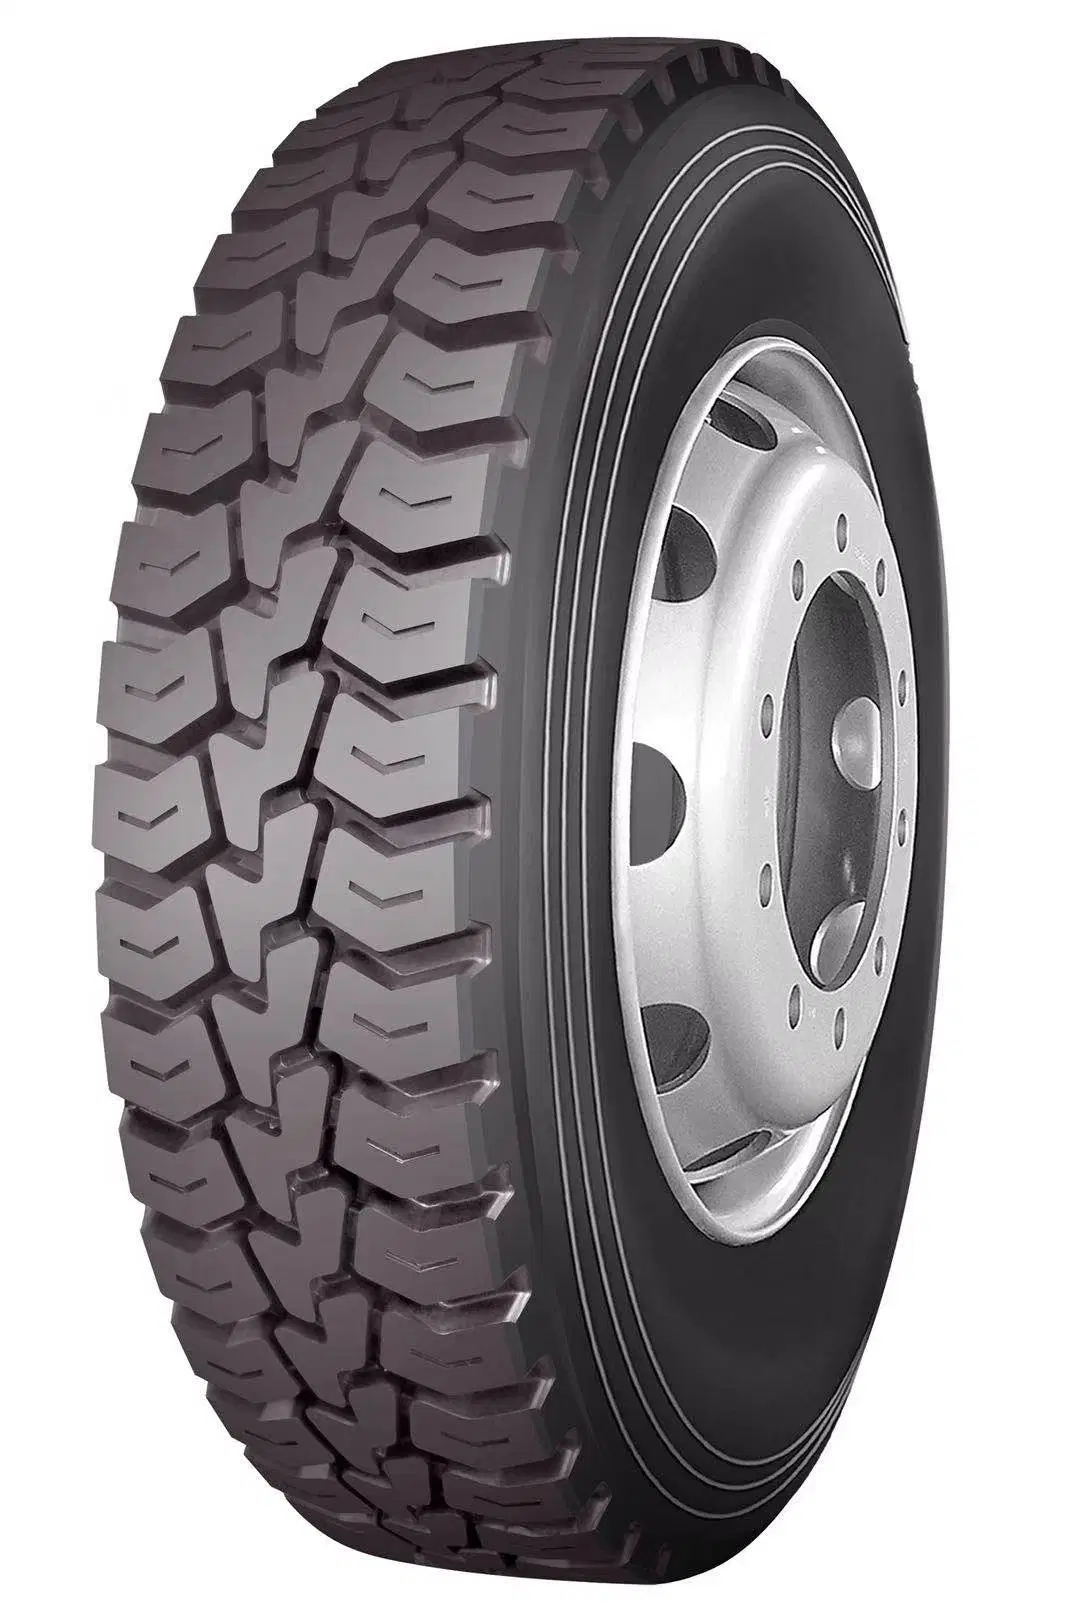 O Onyx /tubo interno de qualidade de Torque/pneu radial de aço todos os pneus de camiões e autocarros com alto desempenho/12.00R20